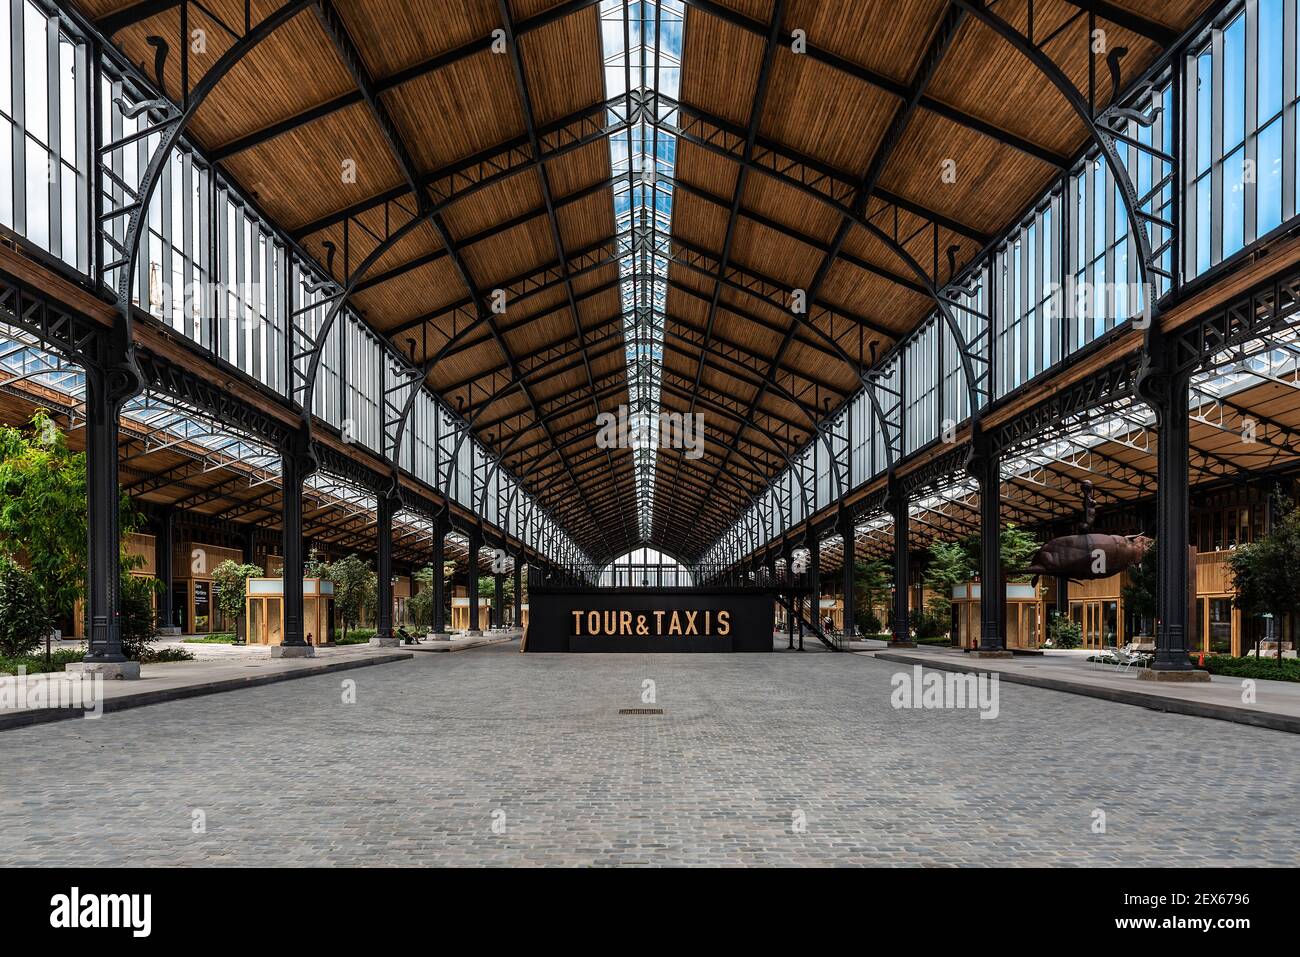 Bruxelles centro città / Belgio - 30 08 2020: Design interno in stile Liberty del Royal Depot al Tour and Taxis eventhall Foto Stock